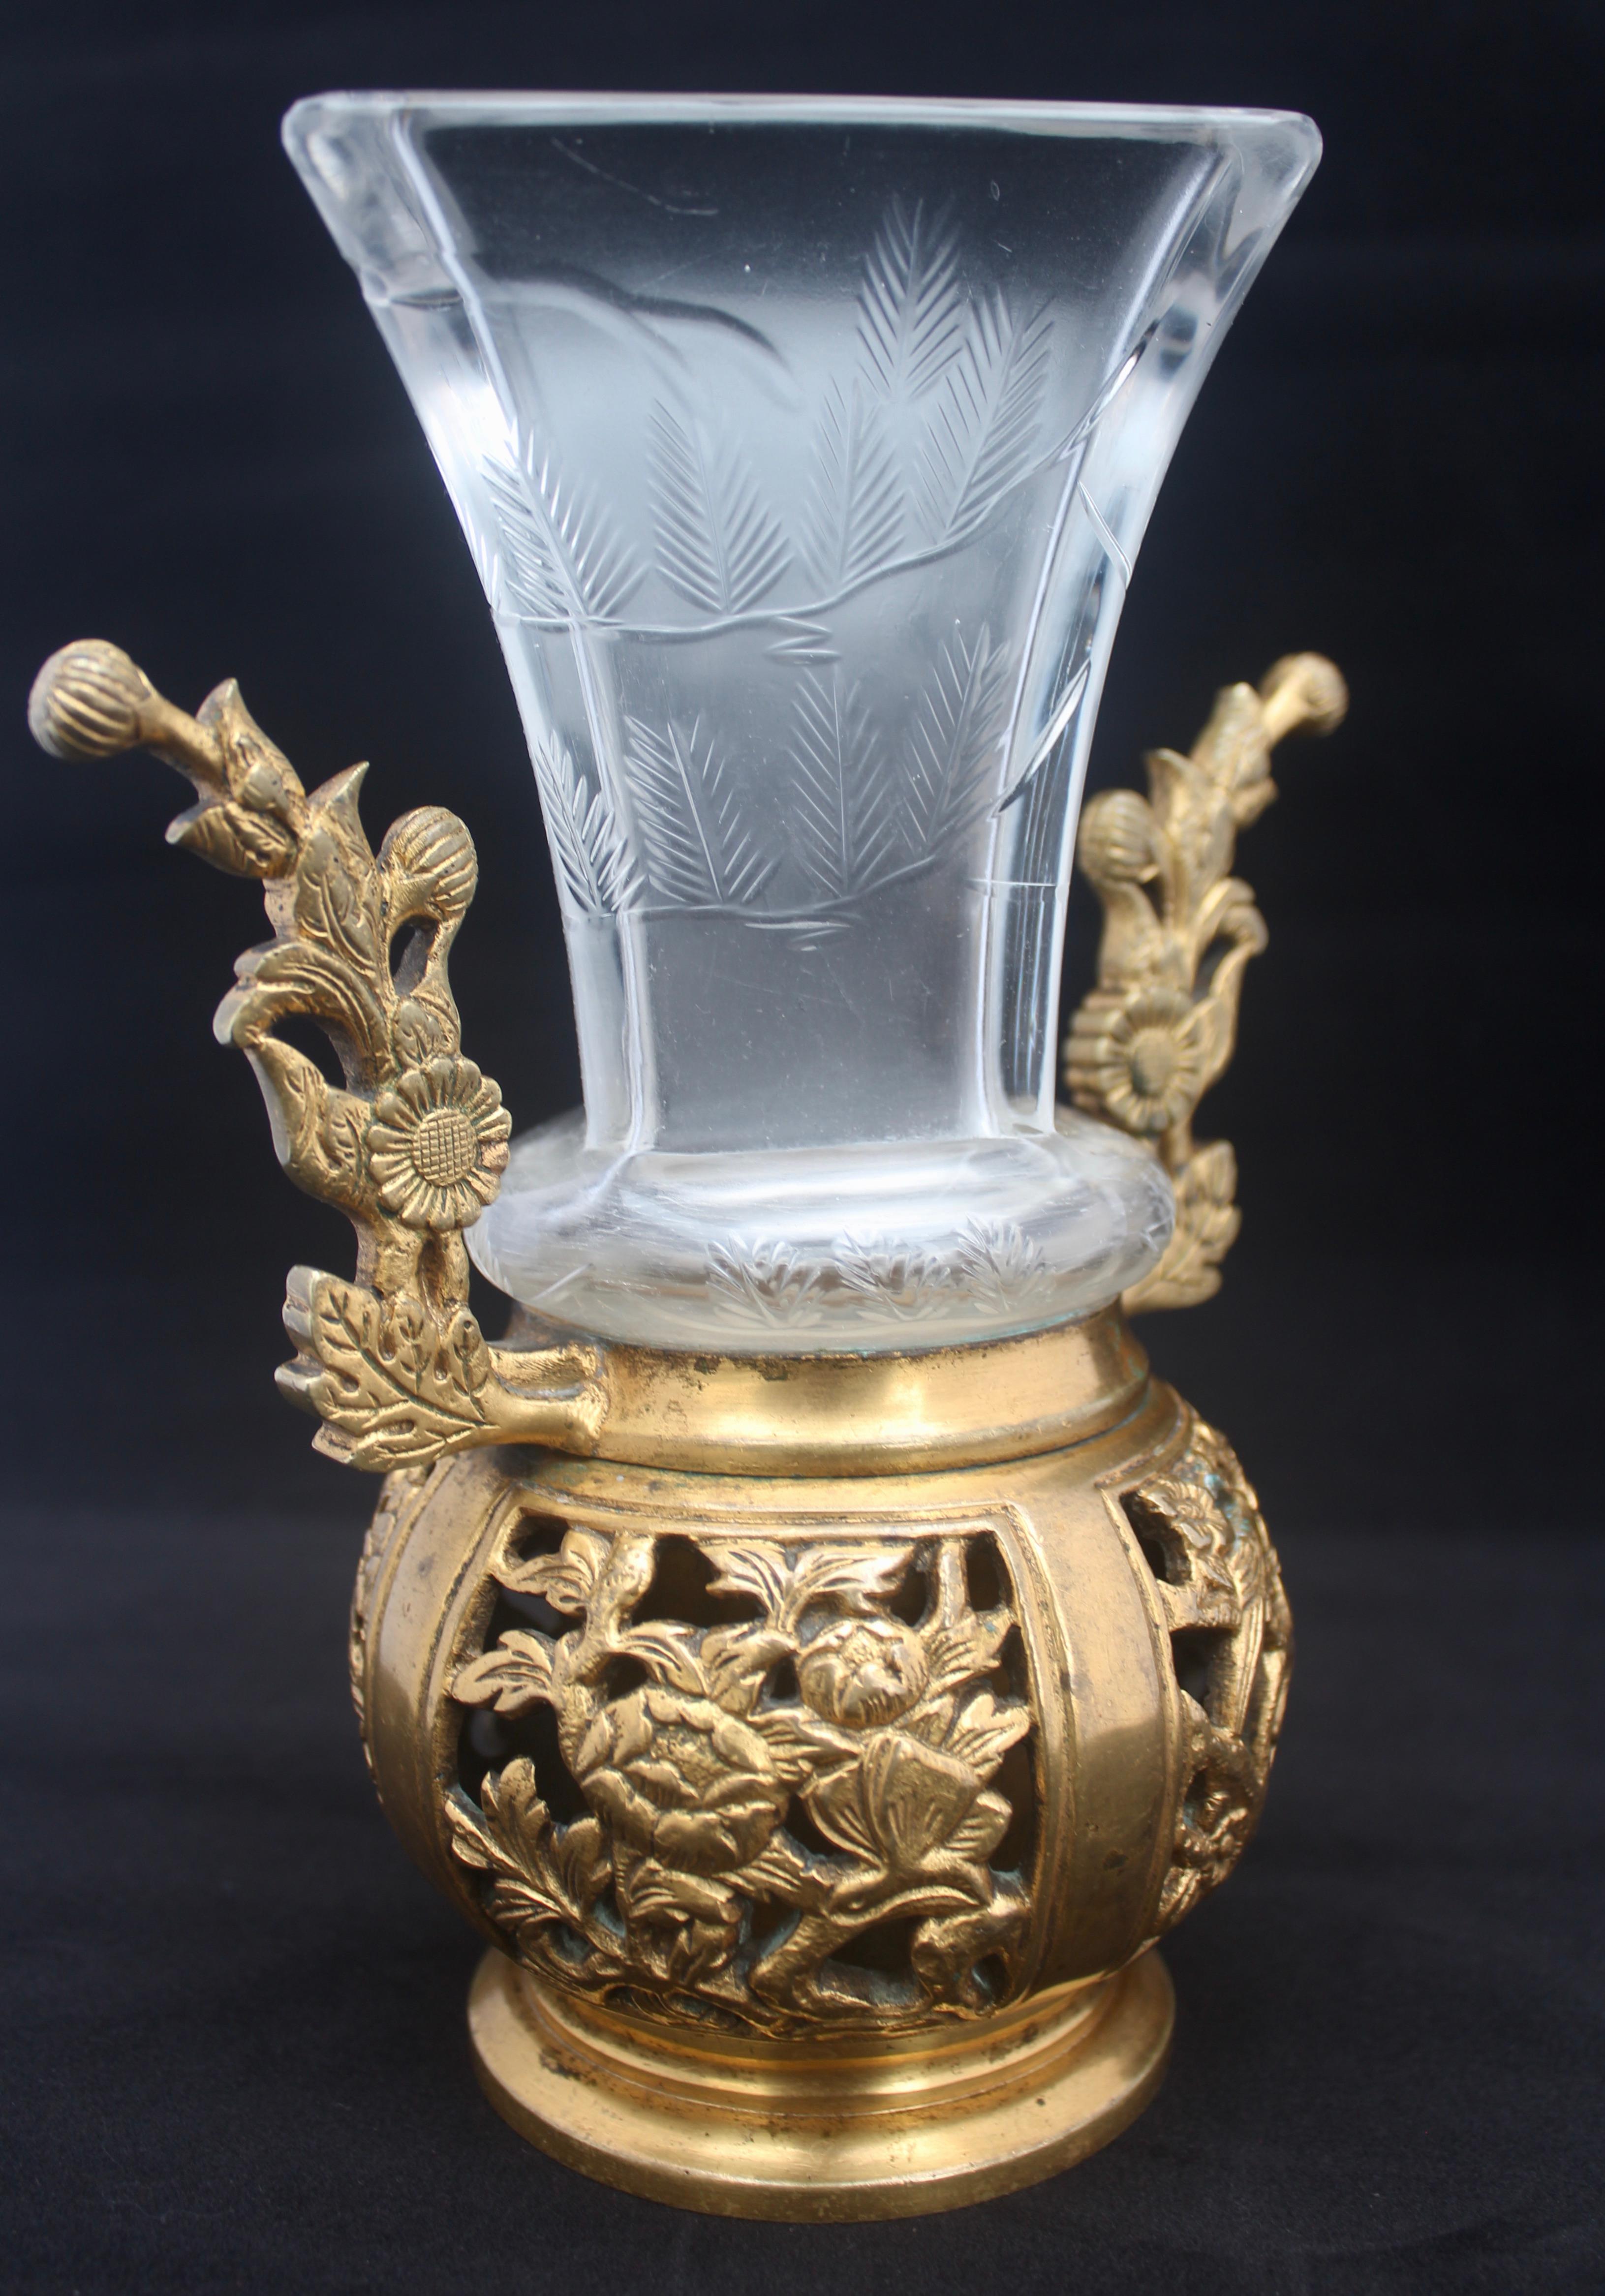 Hand-Carved Japonisme Crystal Vase, Ormolu Mount by Maison Baccarat for Escalier De Cristal